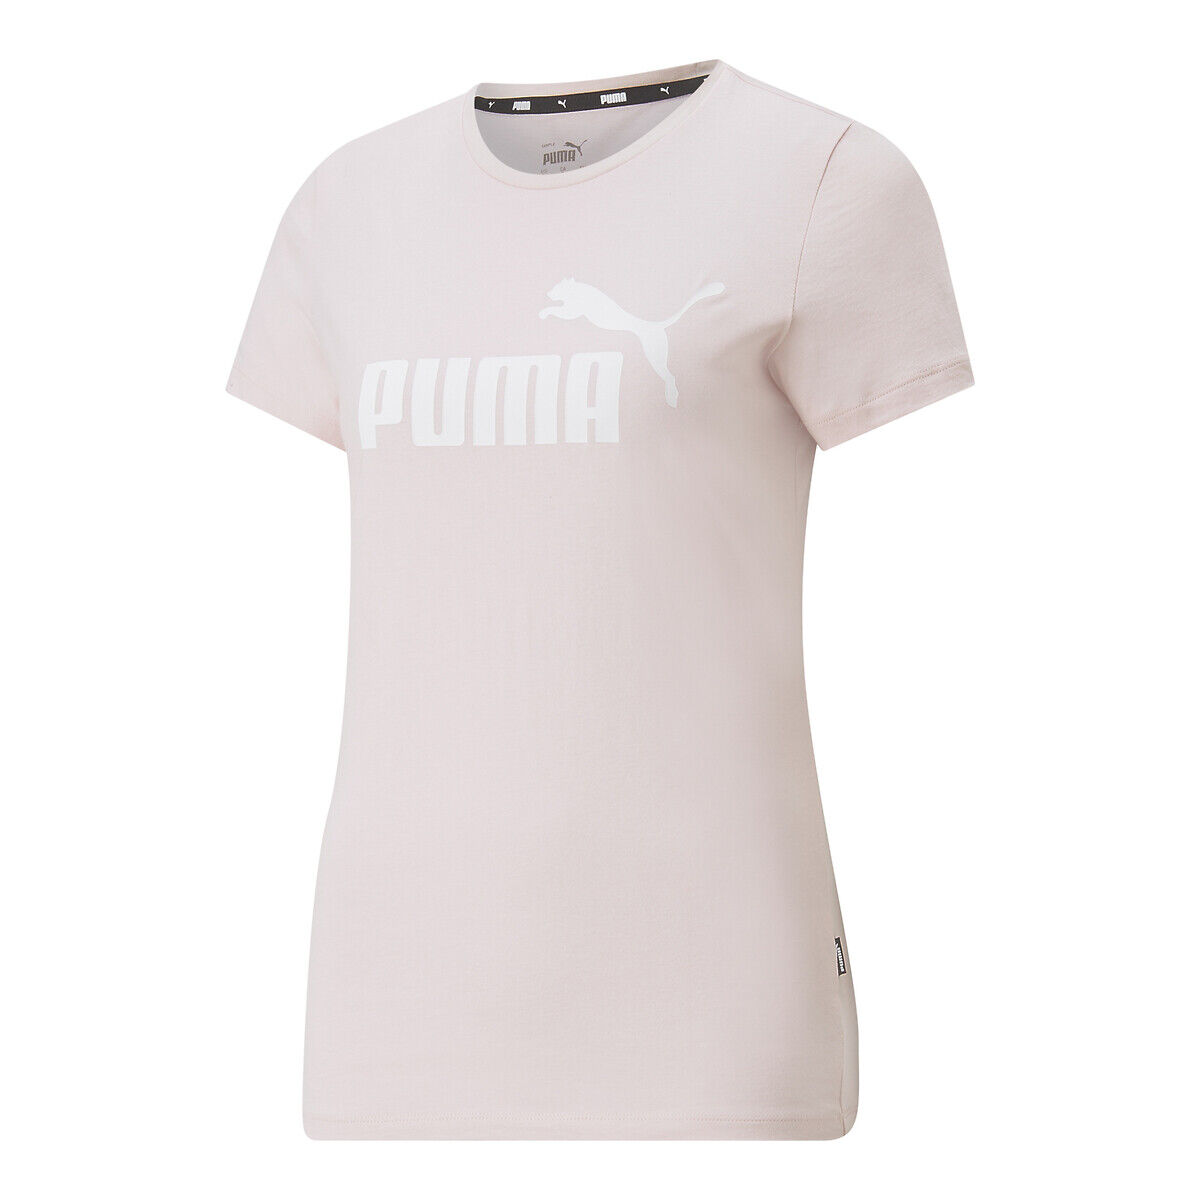 Puma T-shirt com gola redonda, mangas curtas   rosa